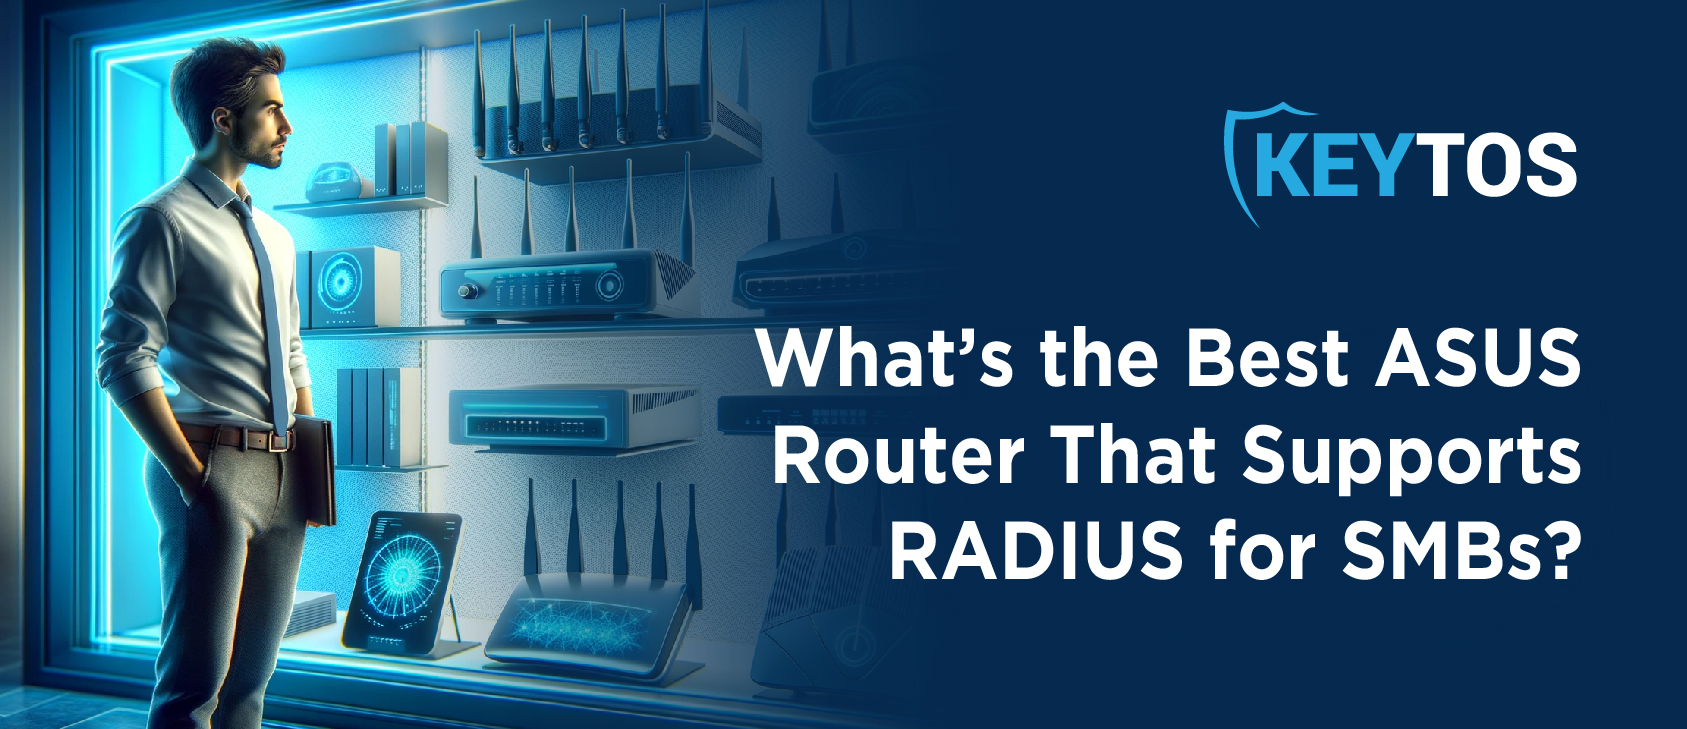 Cuál es el mejor router ASUS que soporta RADIUS